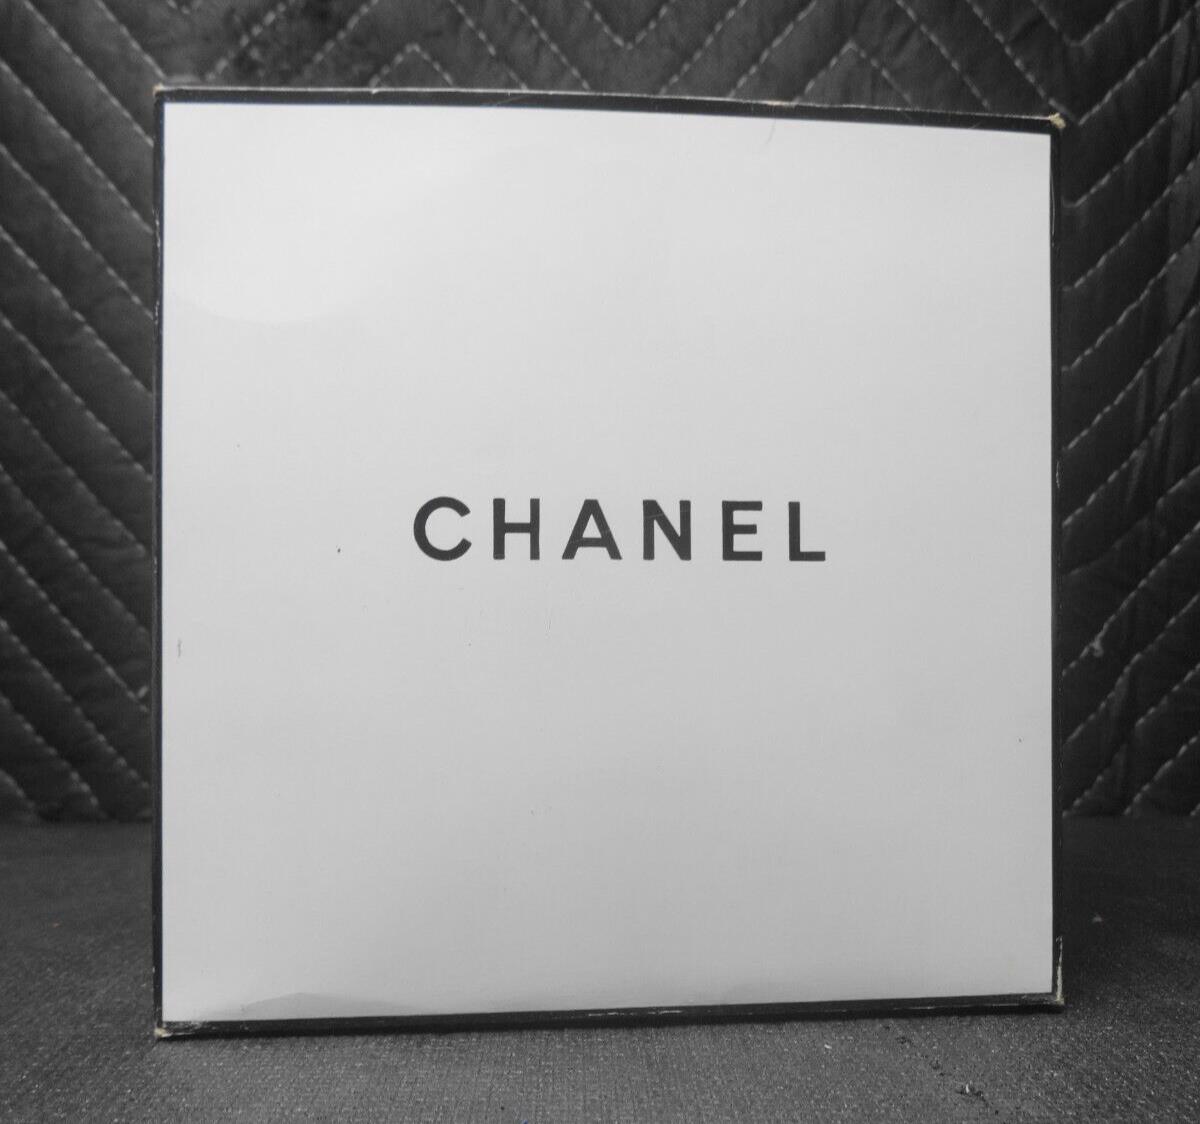 Vintage NOS Chanel No5 Bath Powder 8 oz / 227G Size 730 New No. 5